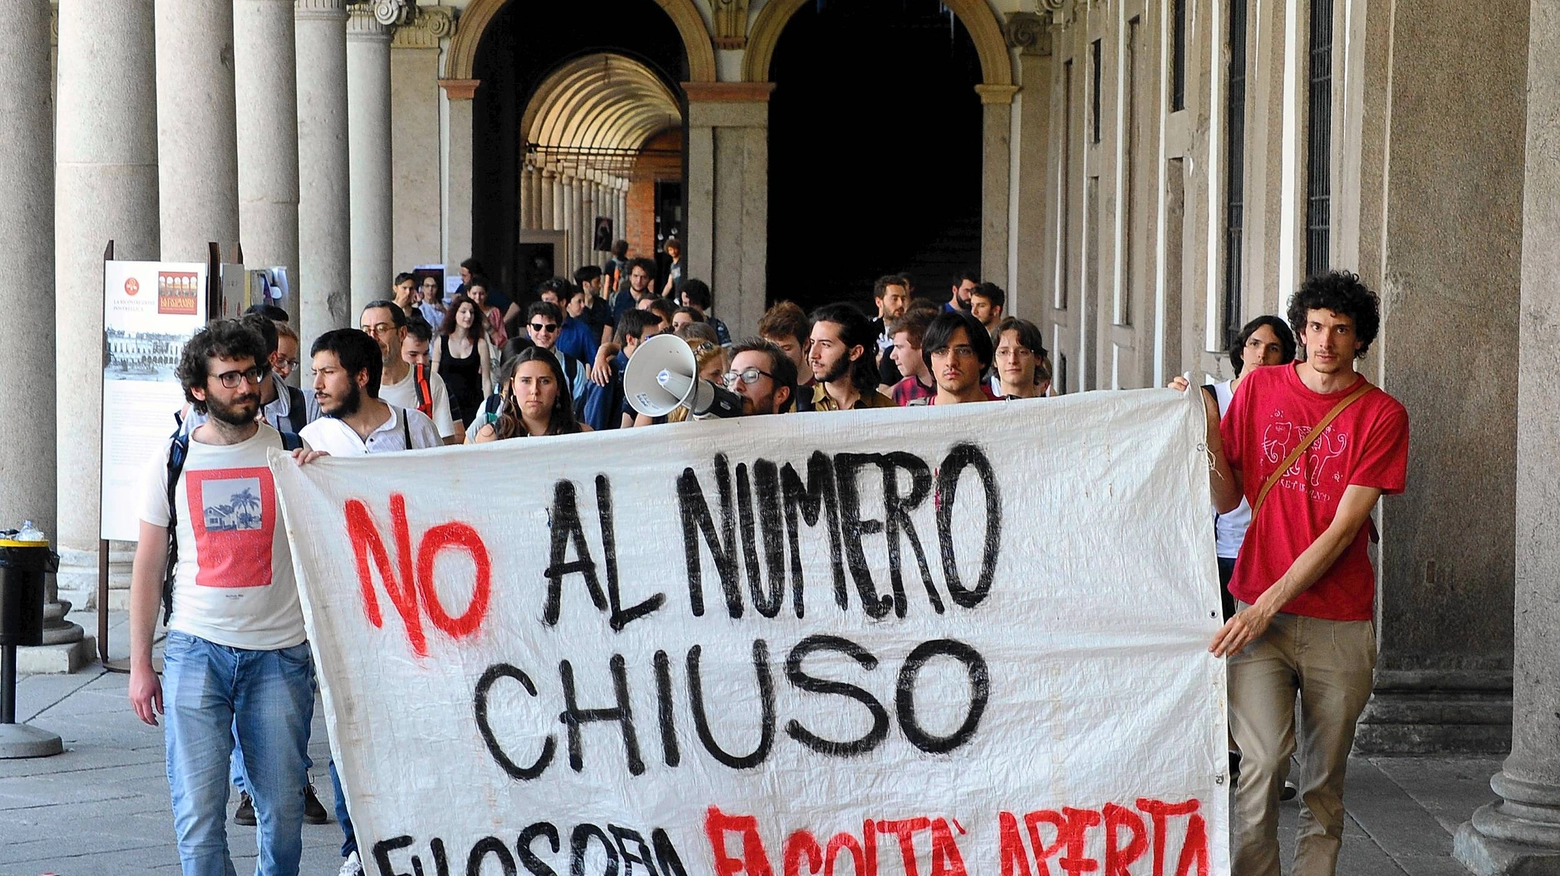 La protesta degli studenti (Fotogramma)